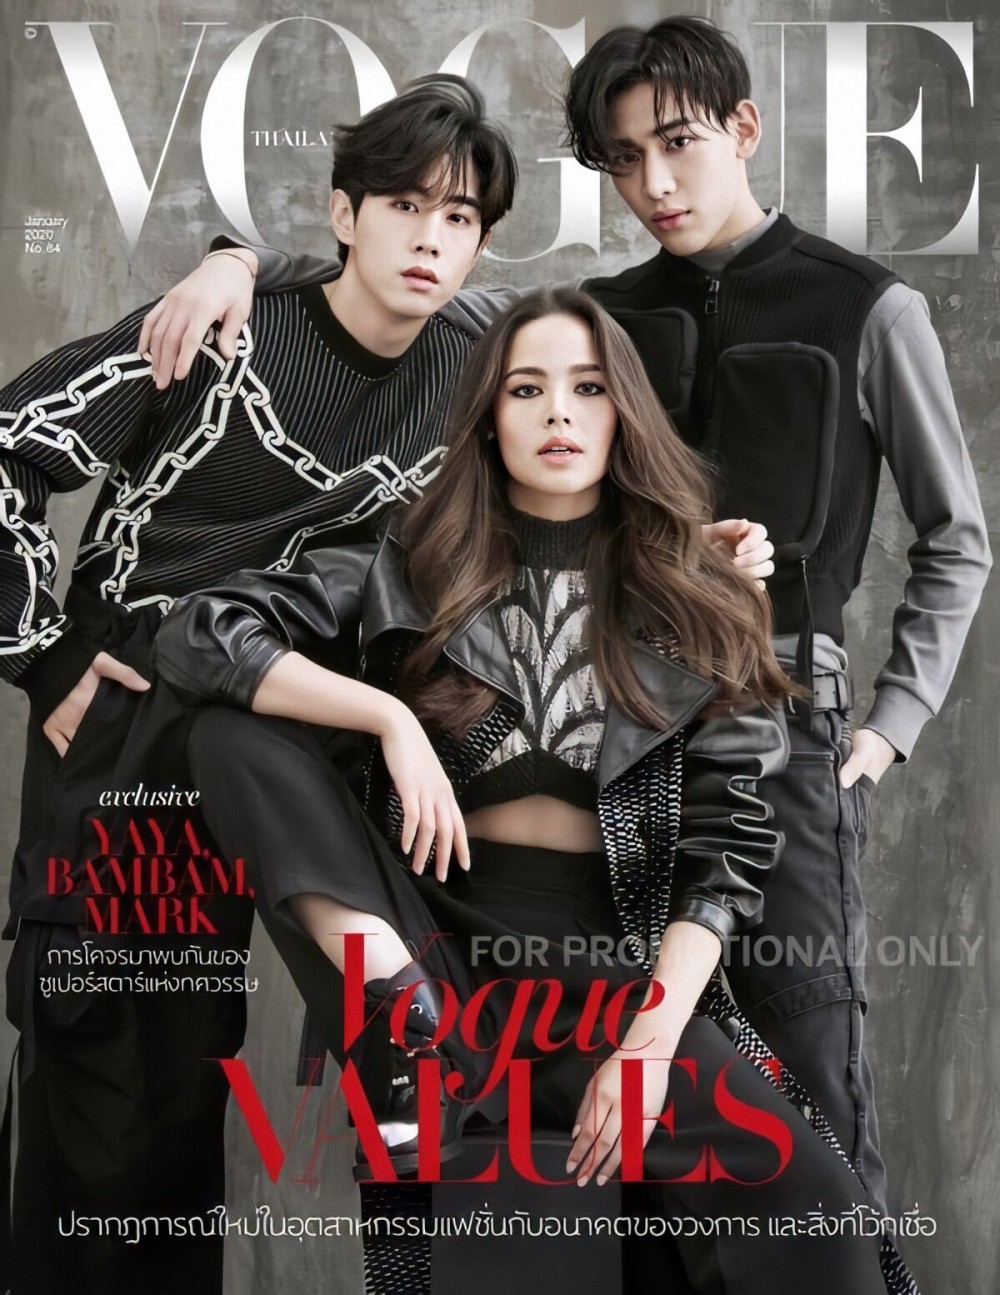 Марк и БэмБэм (GOT7) на обложке Vogue Thailand